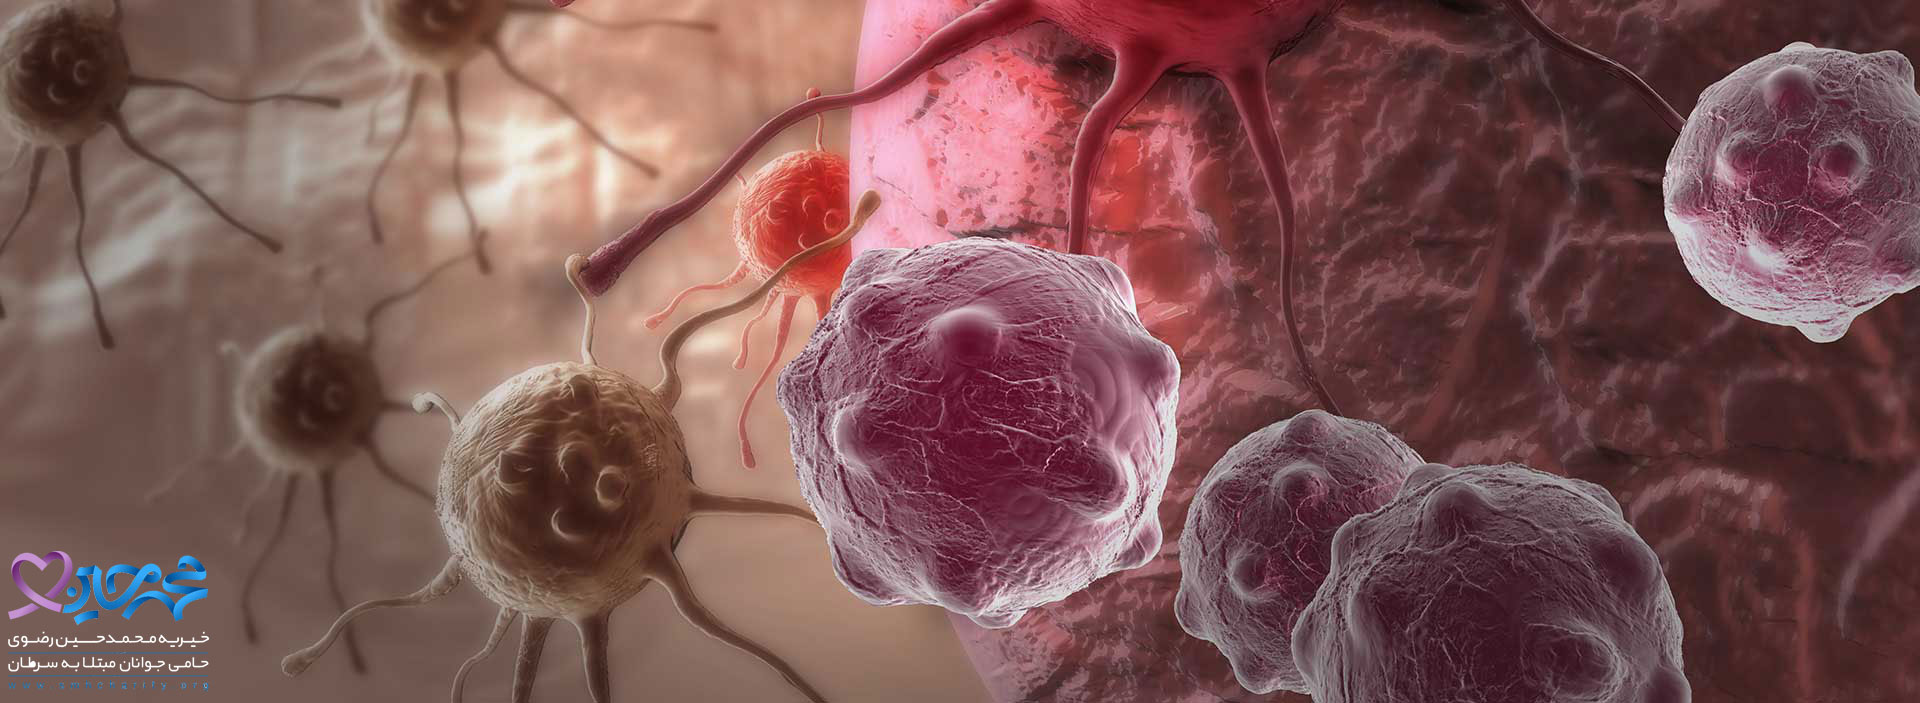 چه عواملی باعث به وجود آمدن بیماری سرطان در فرد می شود؟